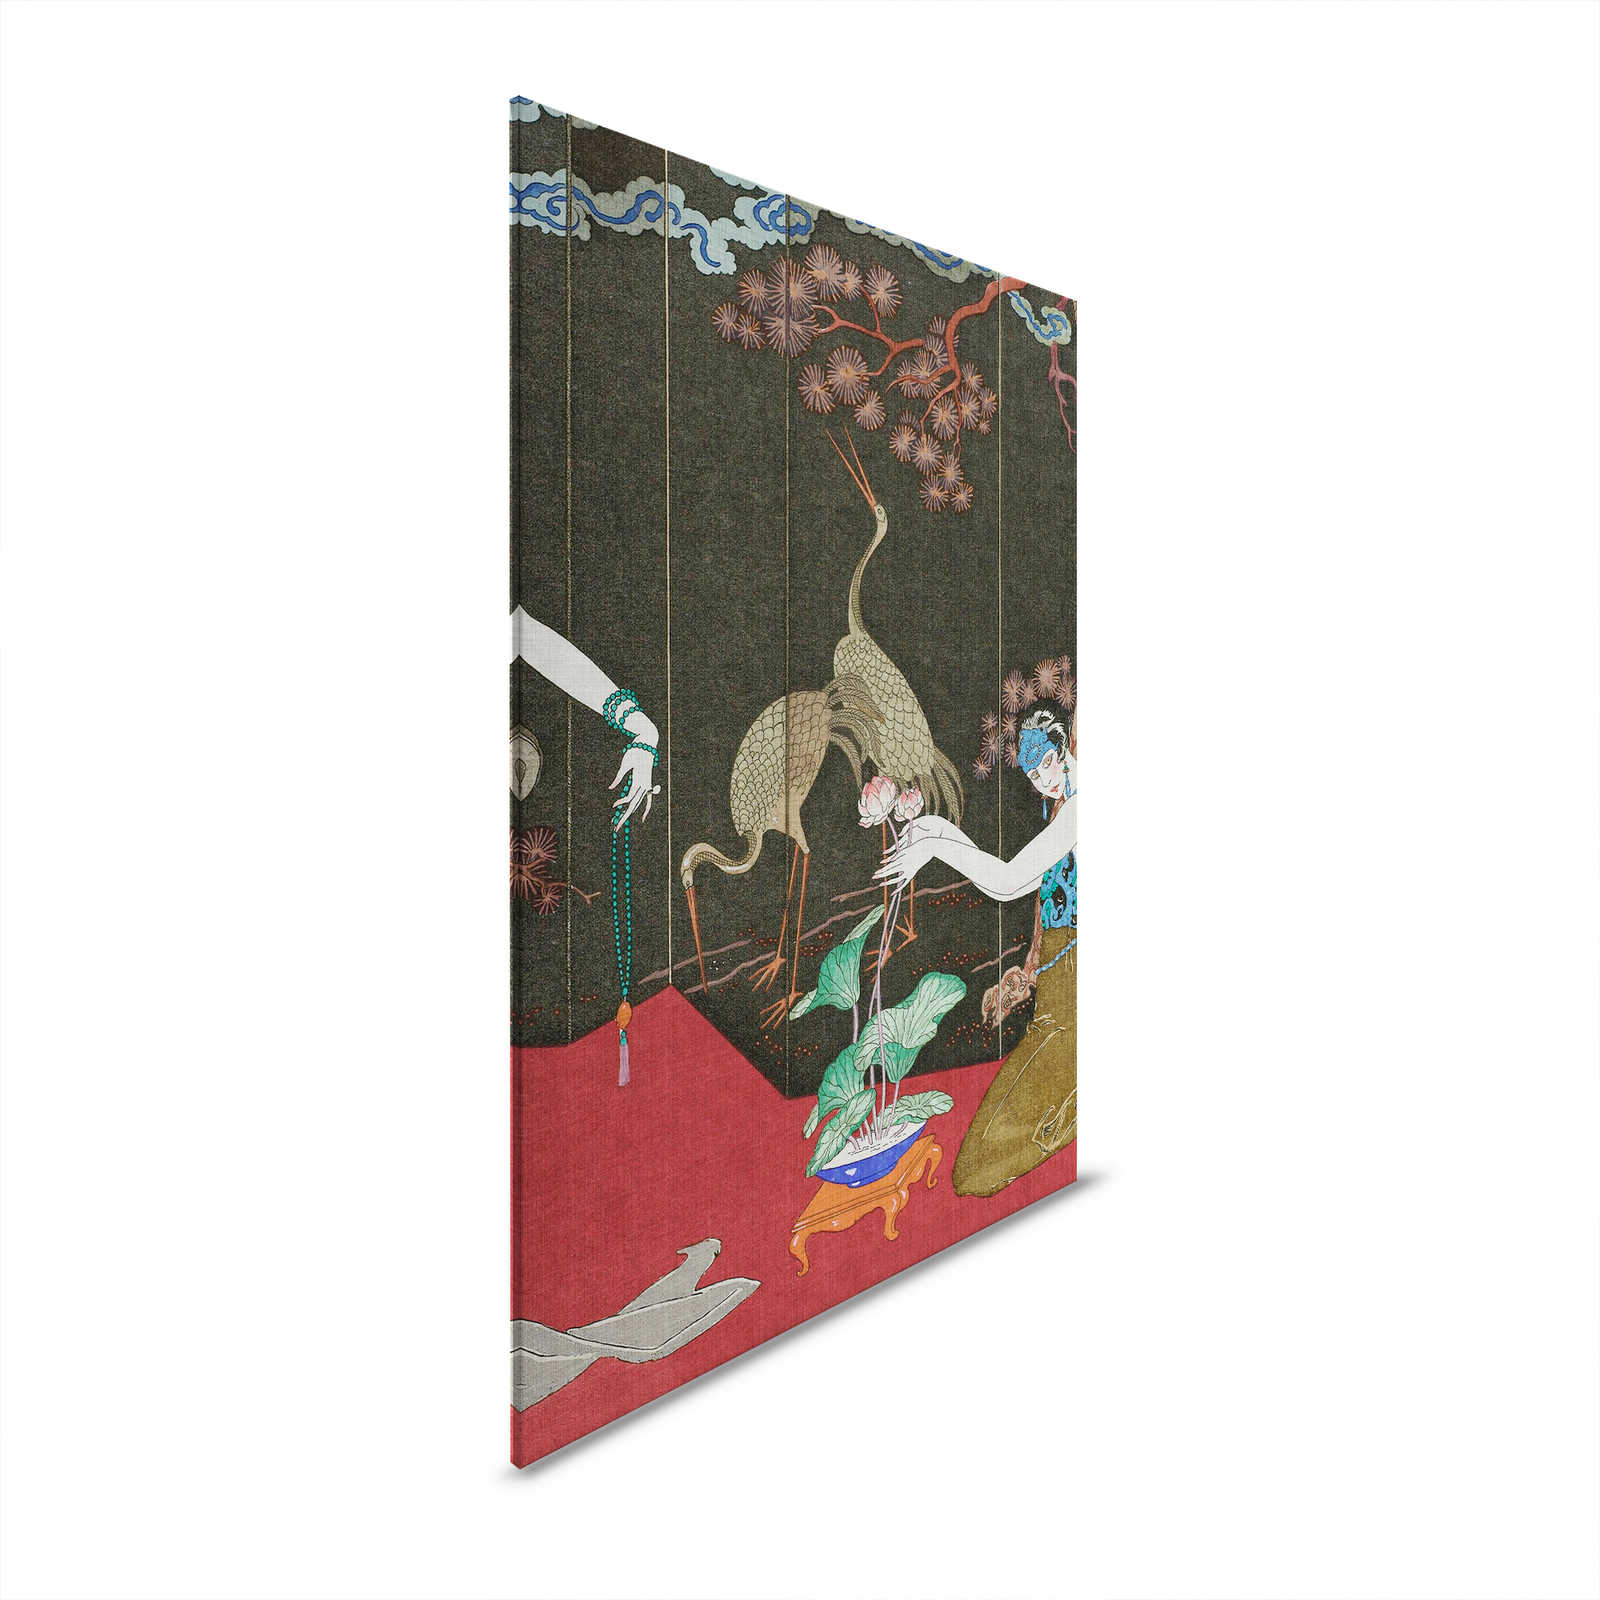 Babylon 1 - Impresión artística en lienzo de inspiración asiática clásica - 1,20 m x 0,80 m
